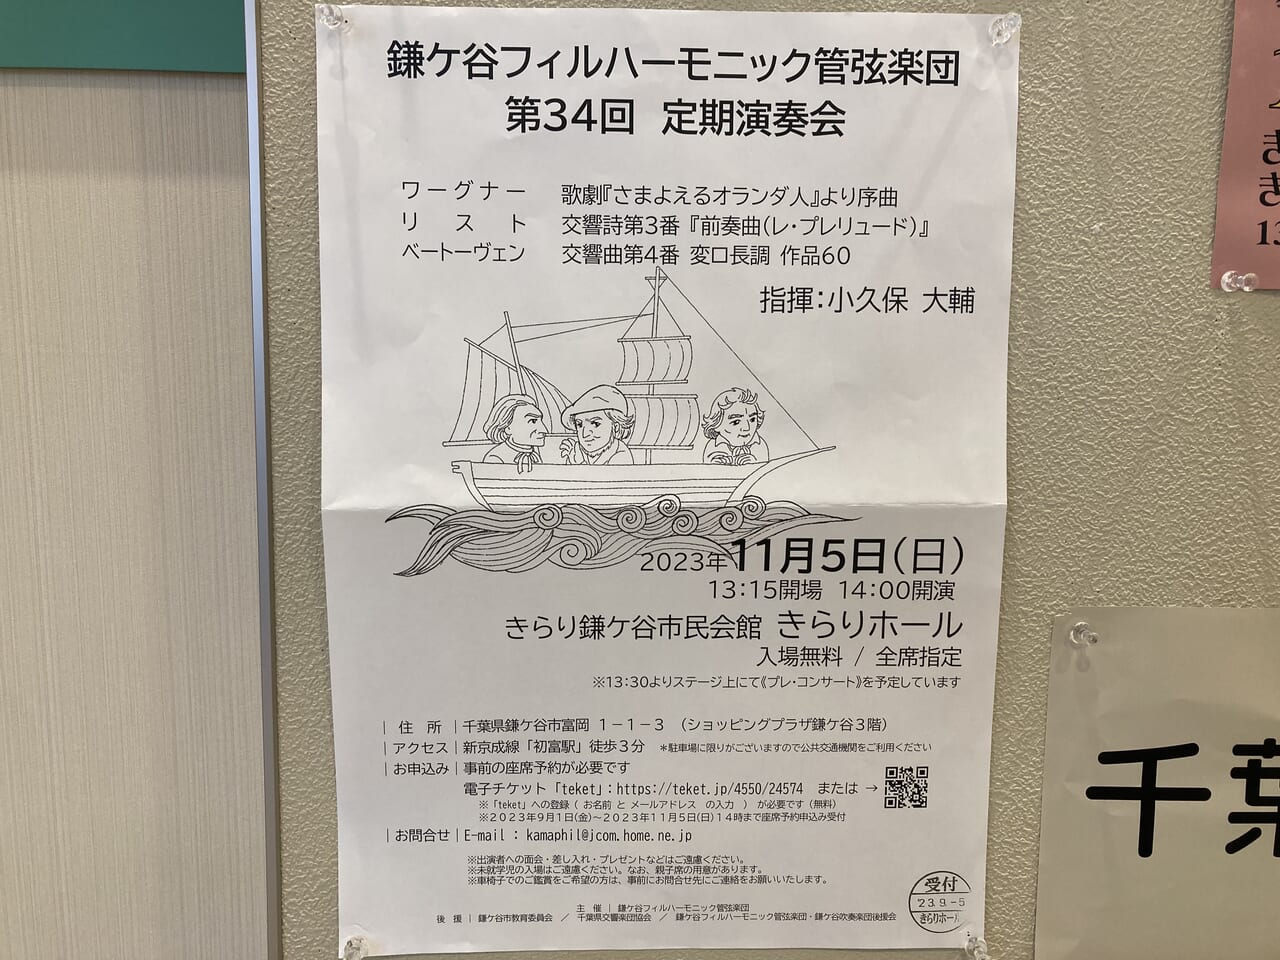 鎌ケ谷フィルハーモニック管弦楽団第34回定期演奏会ポスター